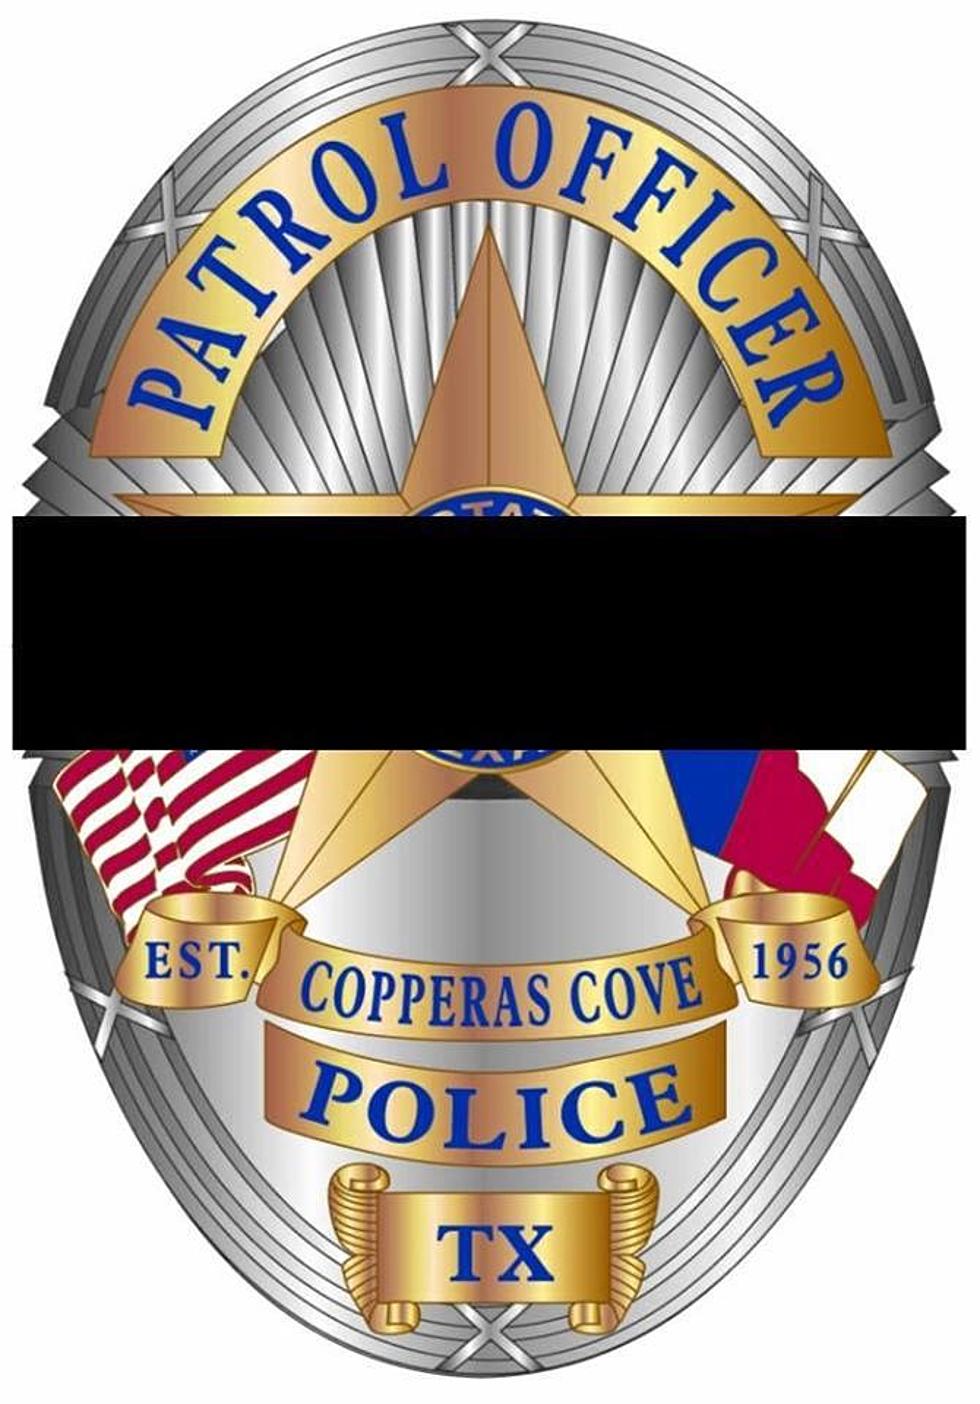 Copperas Cove Chief Dies